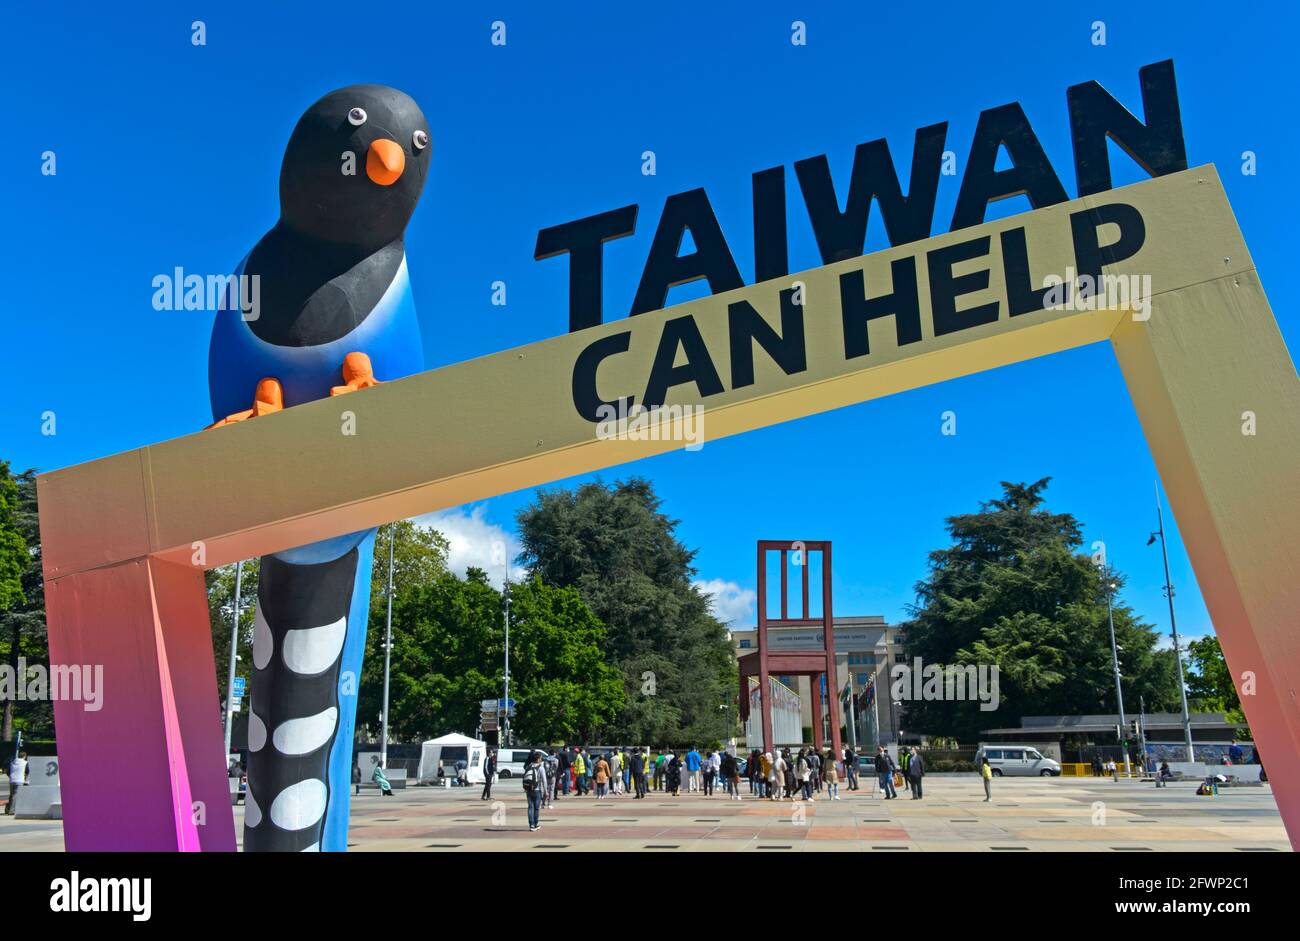 Statua 'Taiwan Can Help' davanti alla sede delle Nazioni Unite durante l'Assemblea Mondiale della Sanità (WHA74) 2021, Ginevra, Svizzera Foto Stock